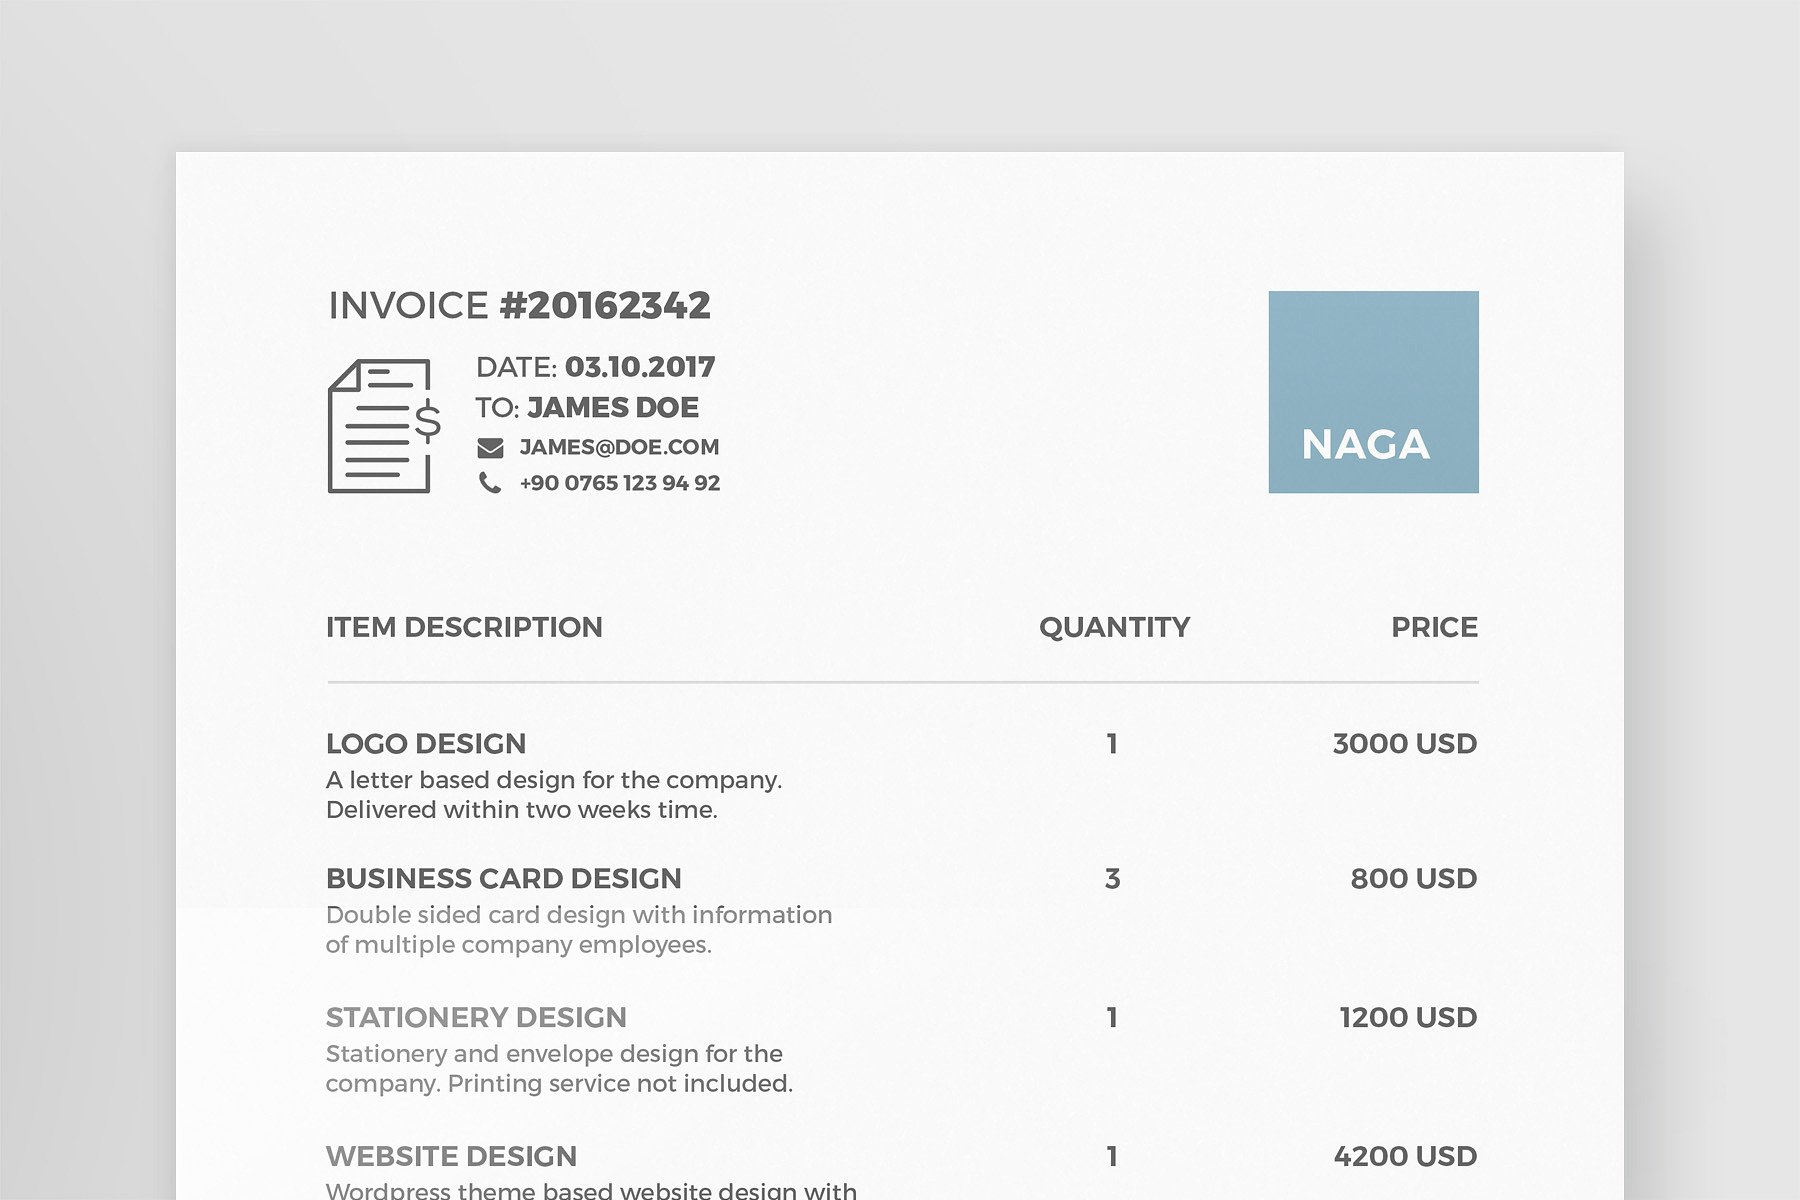 简约简历设计素材Naga - Invoice Templat